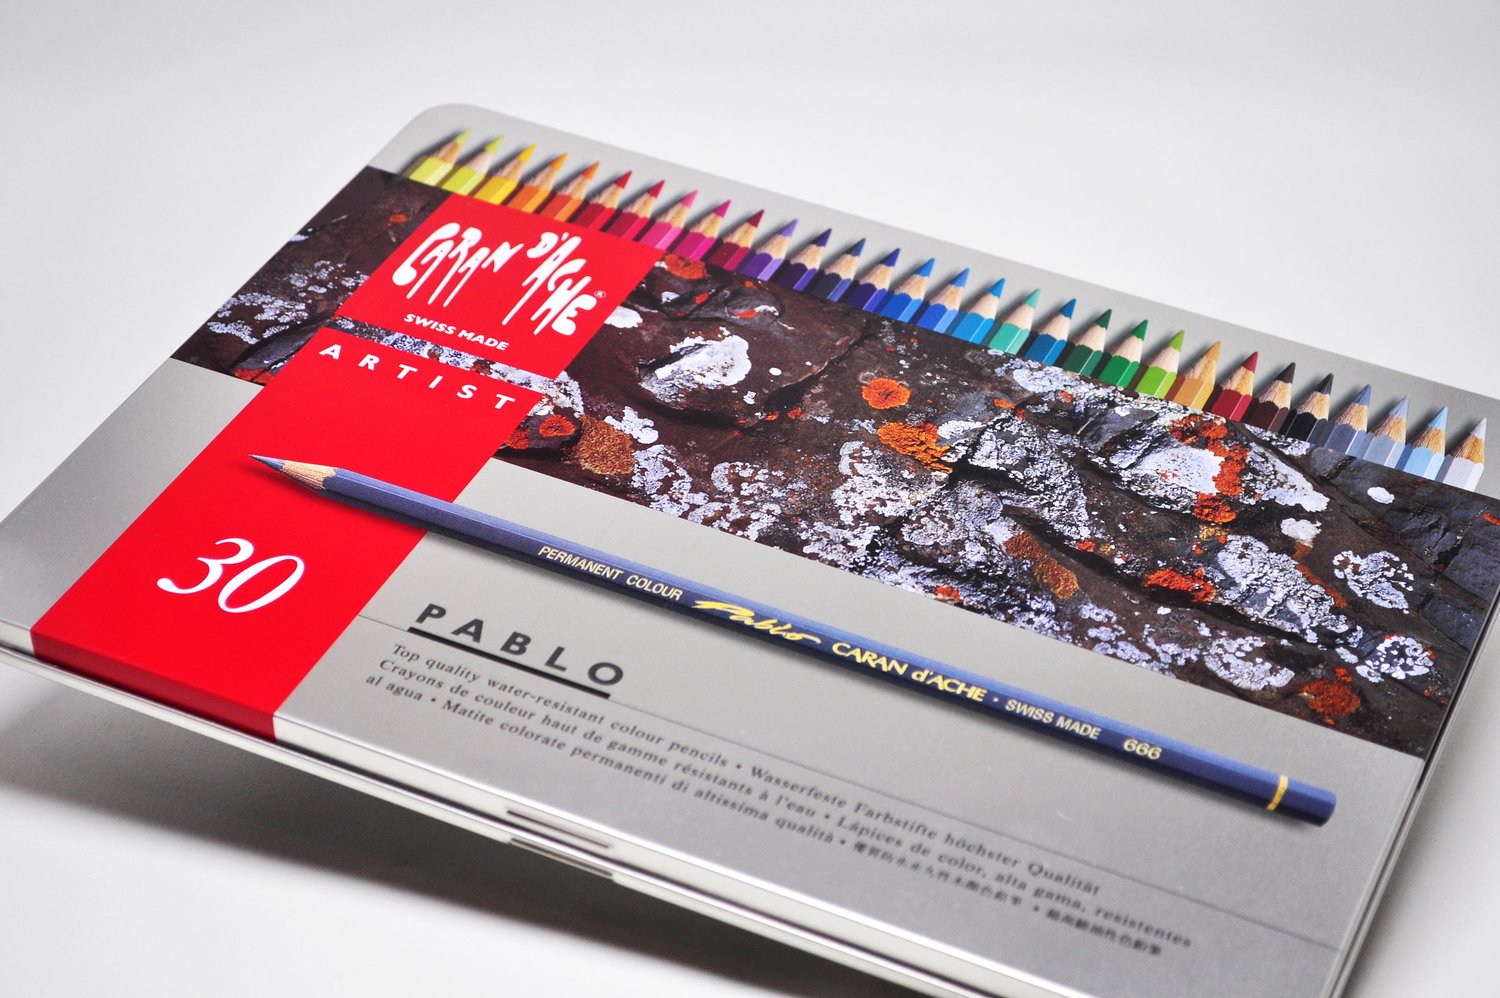 Caran D'Ache Pablo Artist Colouring Pencils - 120 Pack, Colouring Pencils